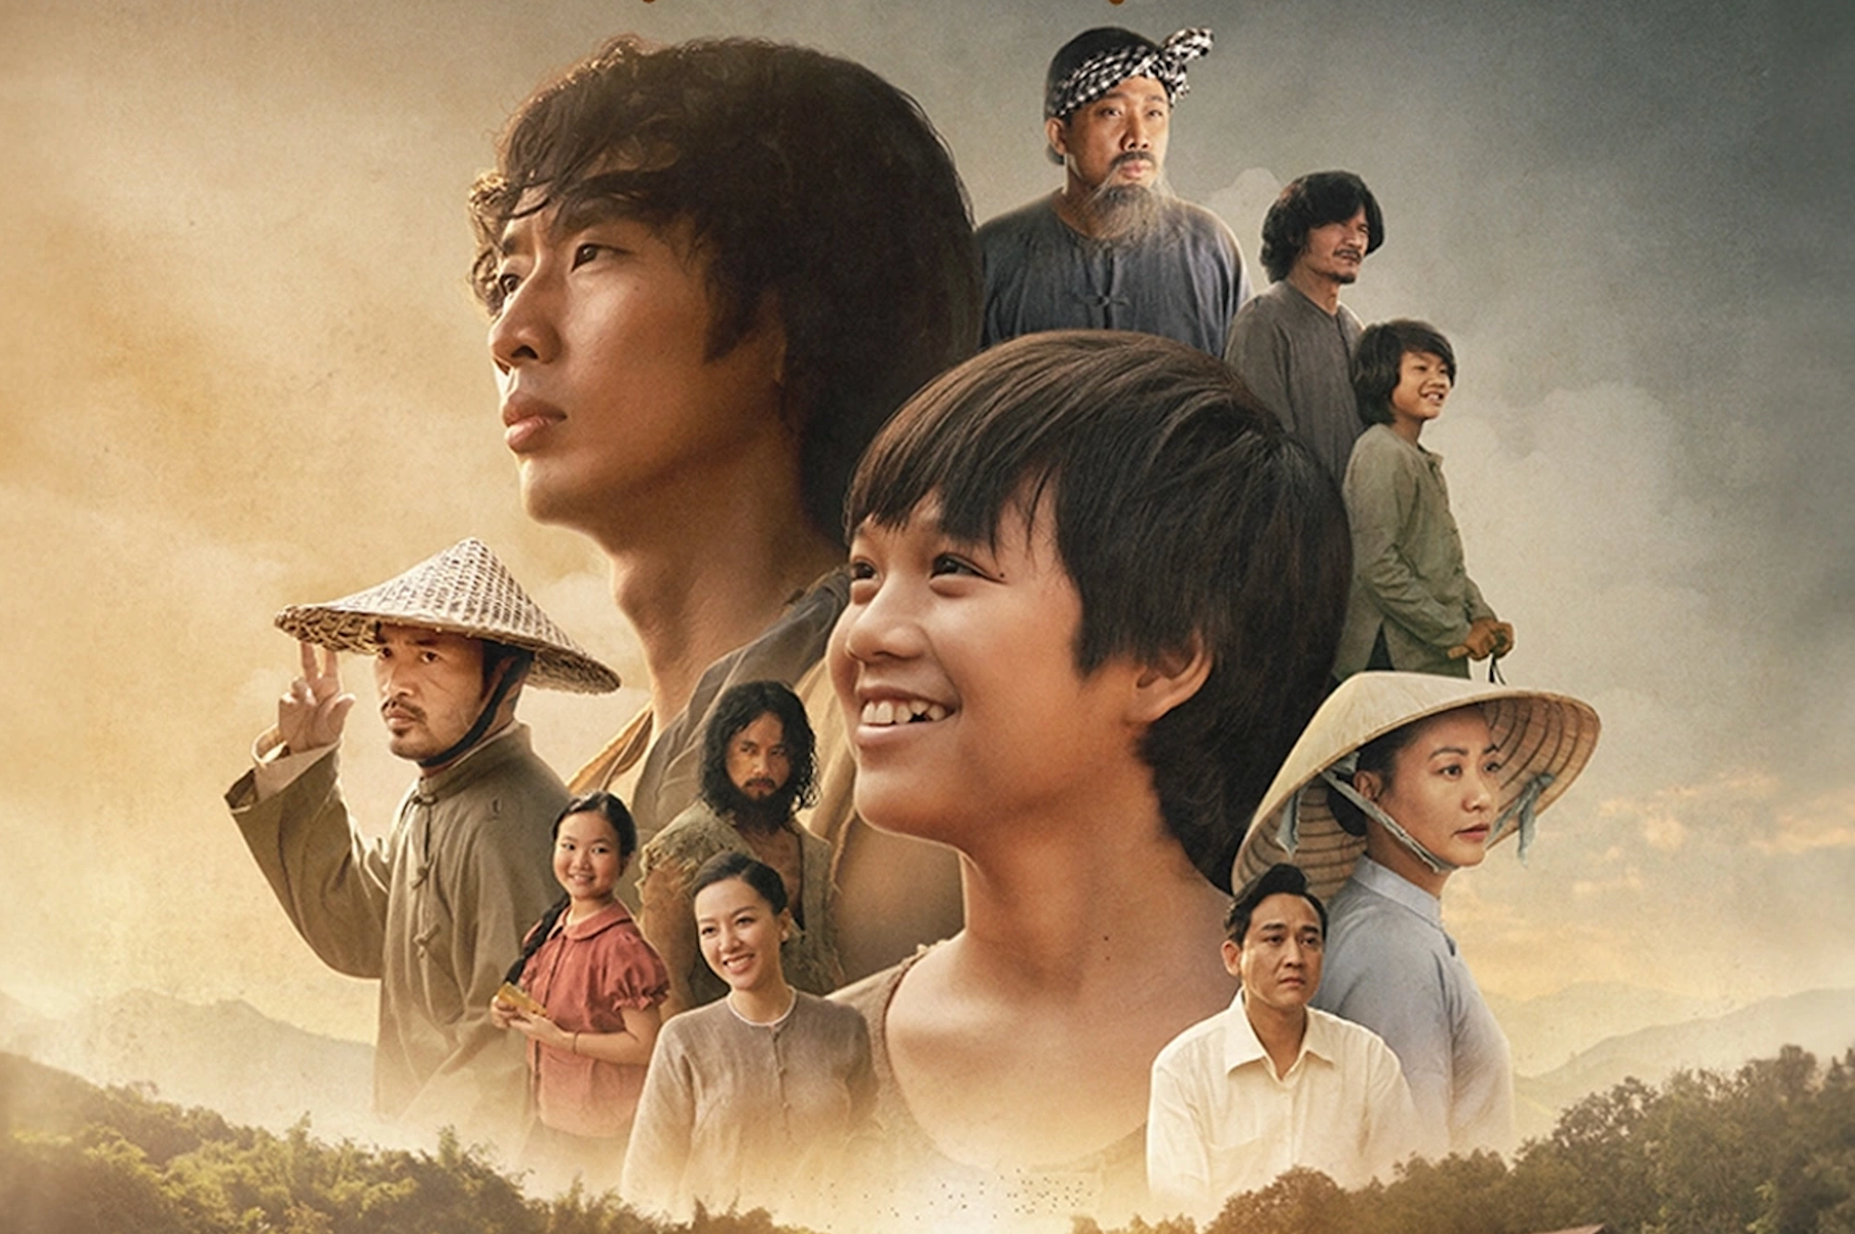 Liên hoan phim Việt Nam lần thứ 23: Có 16 phim truyện đến 2 phim bị tố và gây tranh cãi - Ảnh 3.